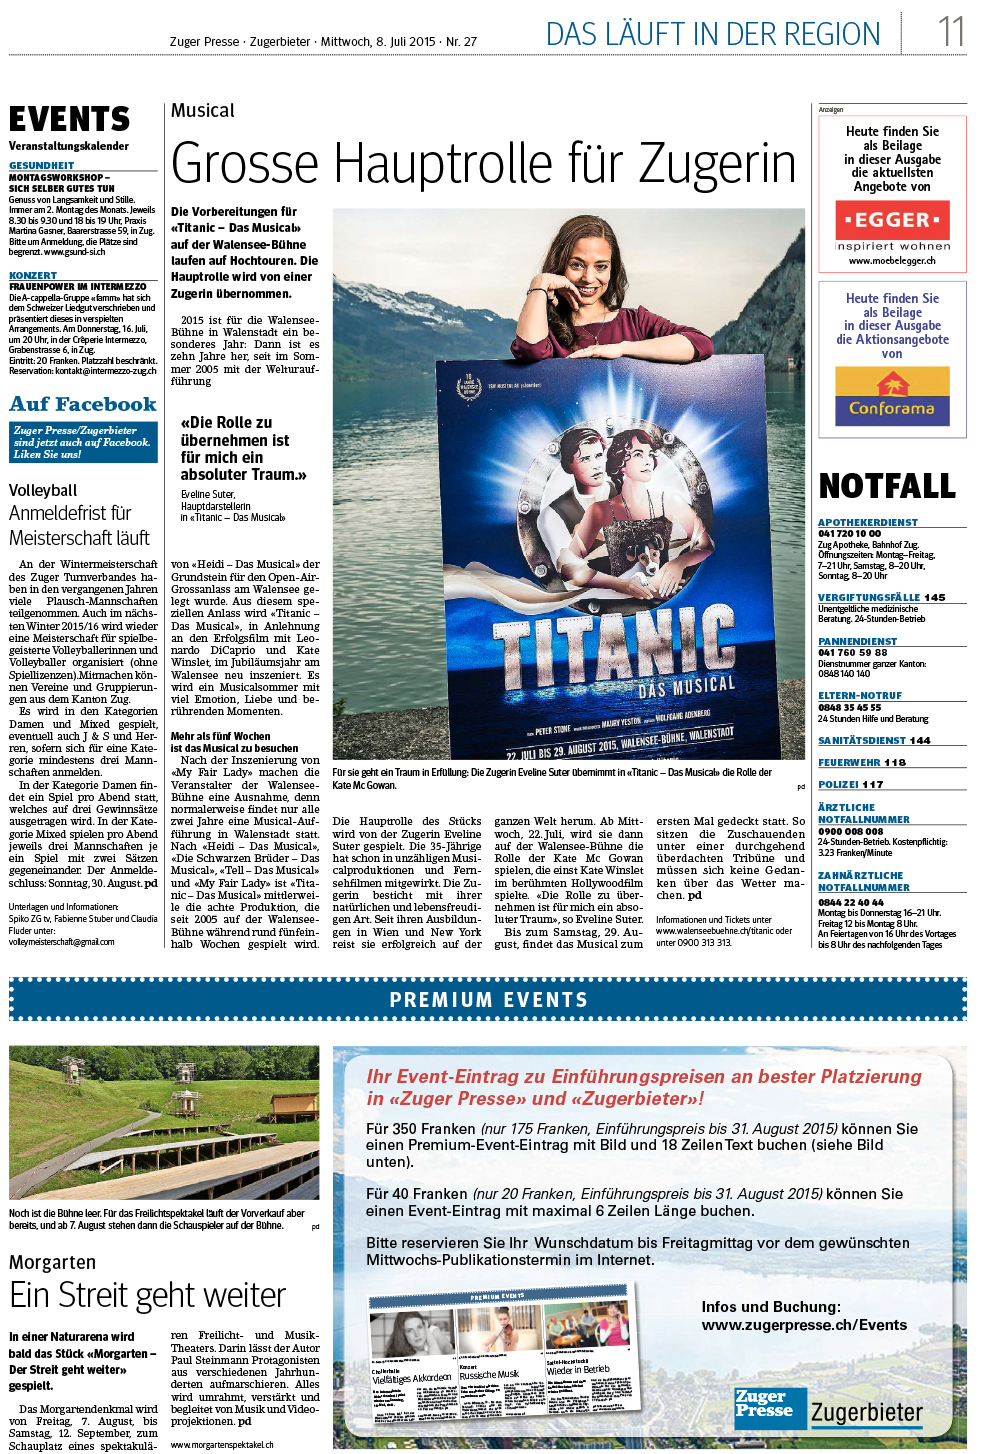 Zuger Presse / Juli 2015